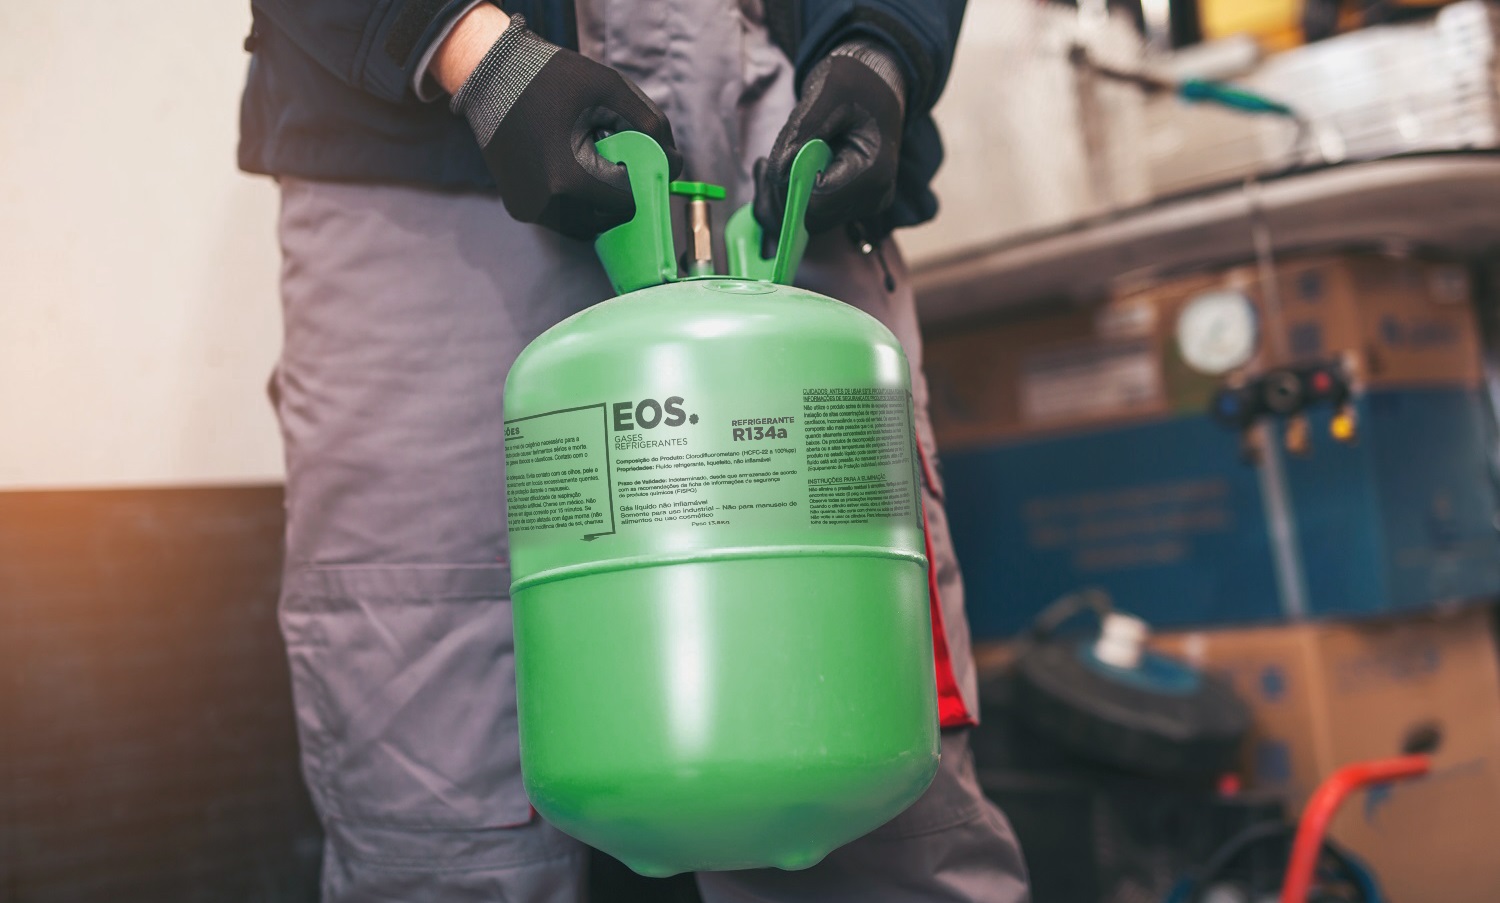 Gases refrigerantes EOS: segurança e preservação